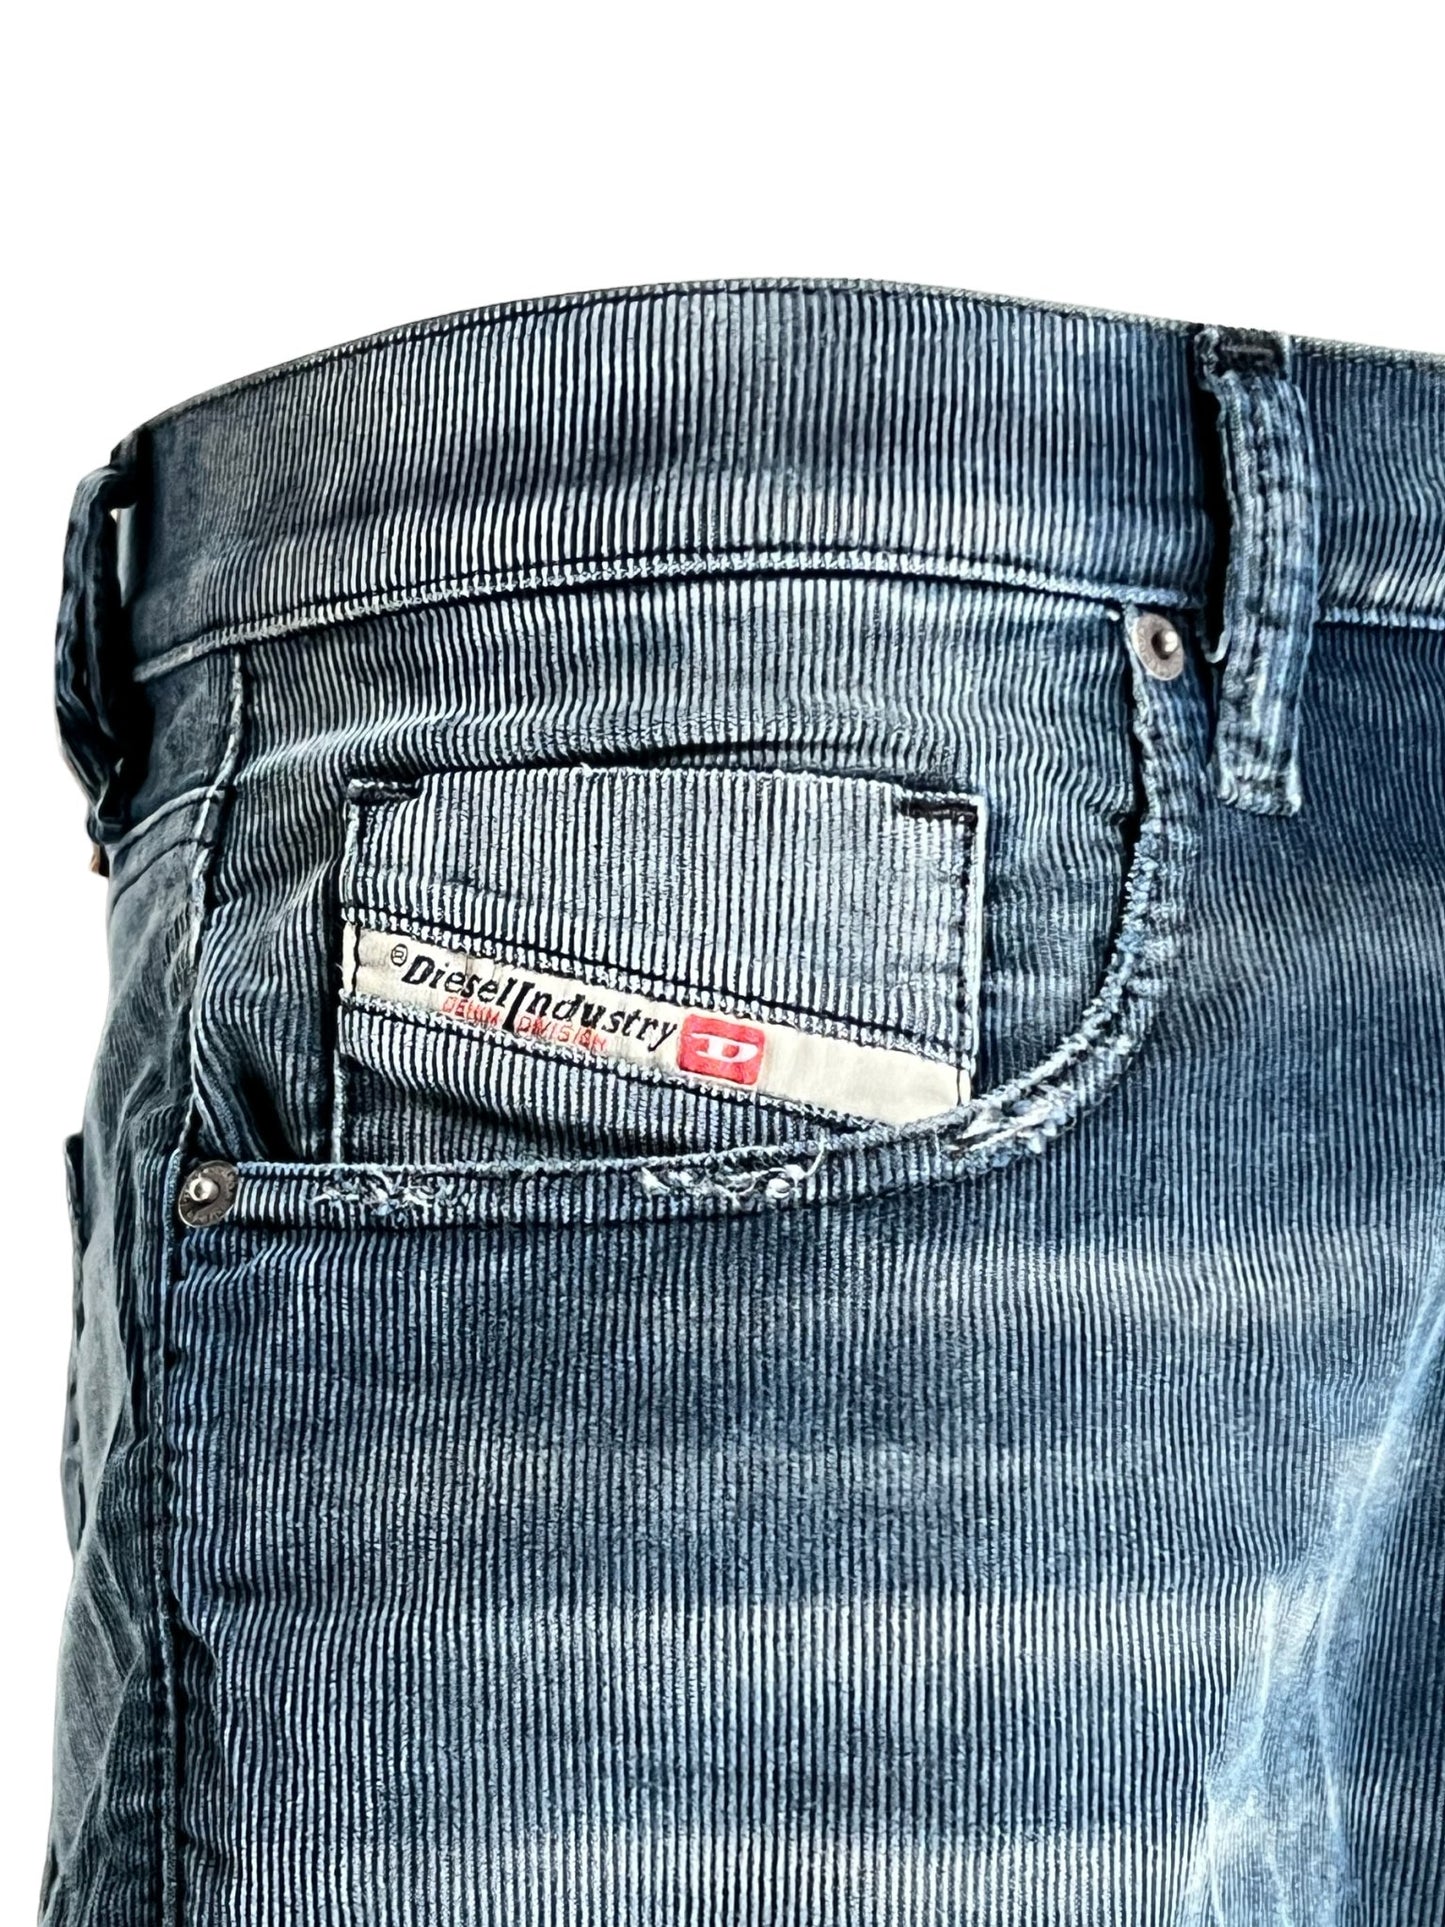 Close-up of a comfort denim jeans pocket with a DIESEL 2019 D-STRUKT 68JF brand label.